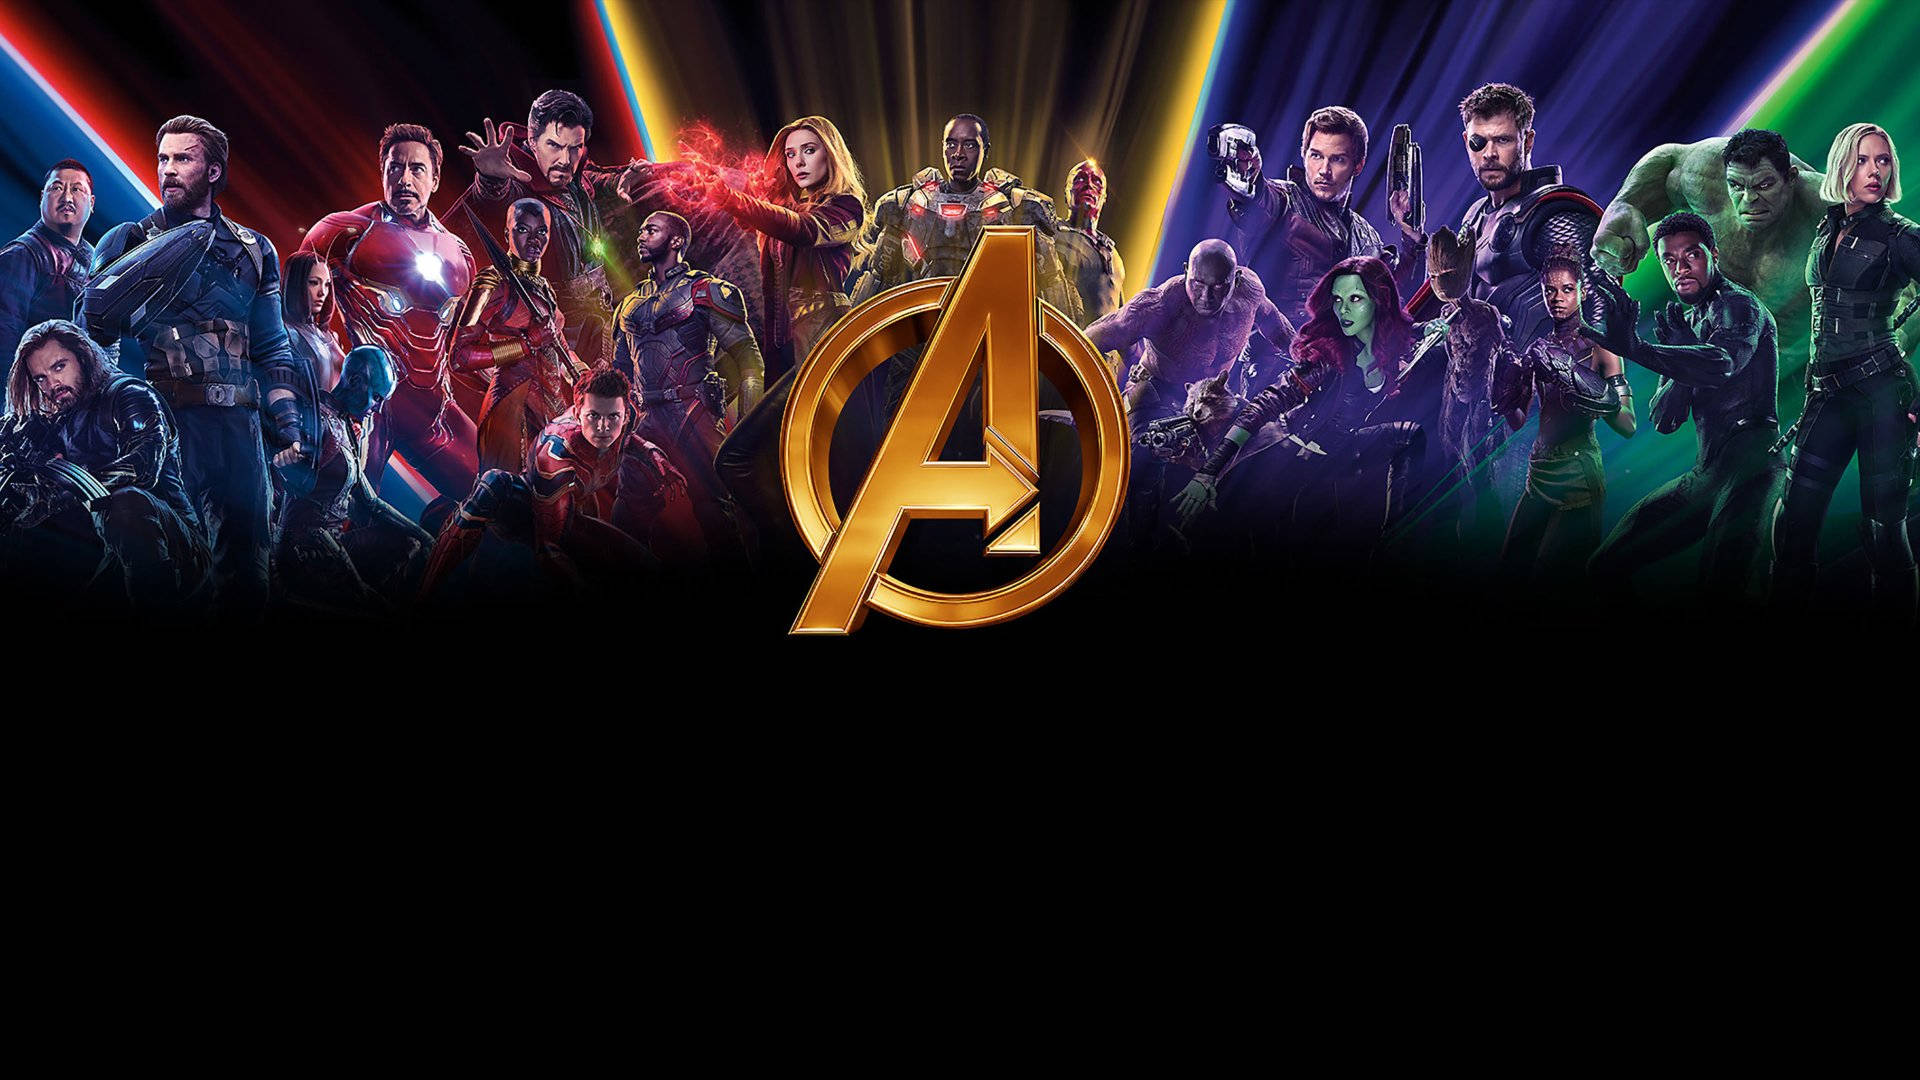 Färggladashuri Och Avengers. Wallpaper